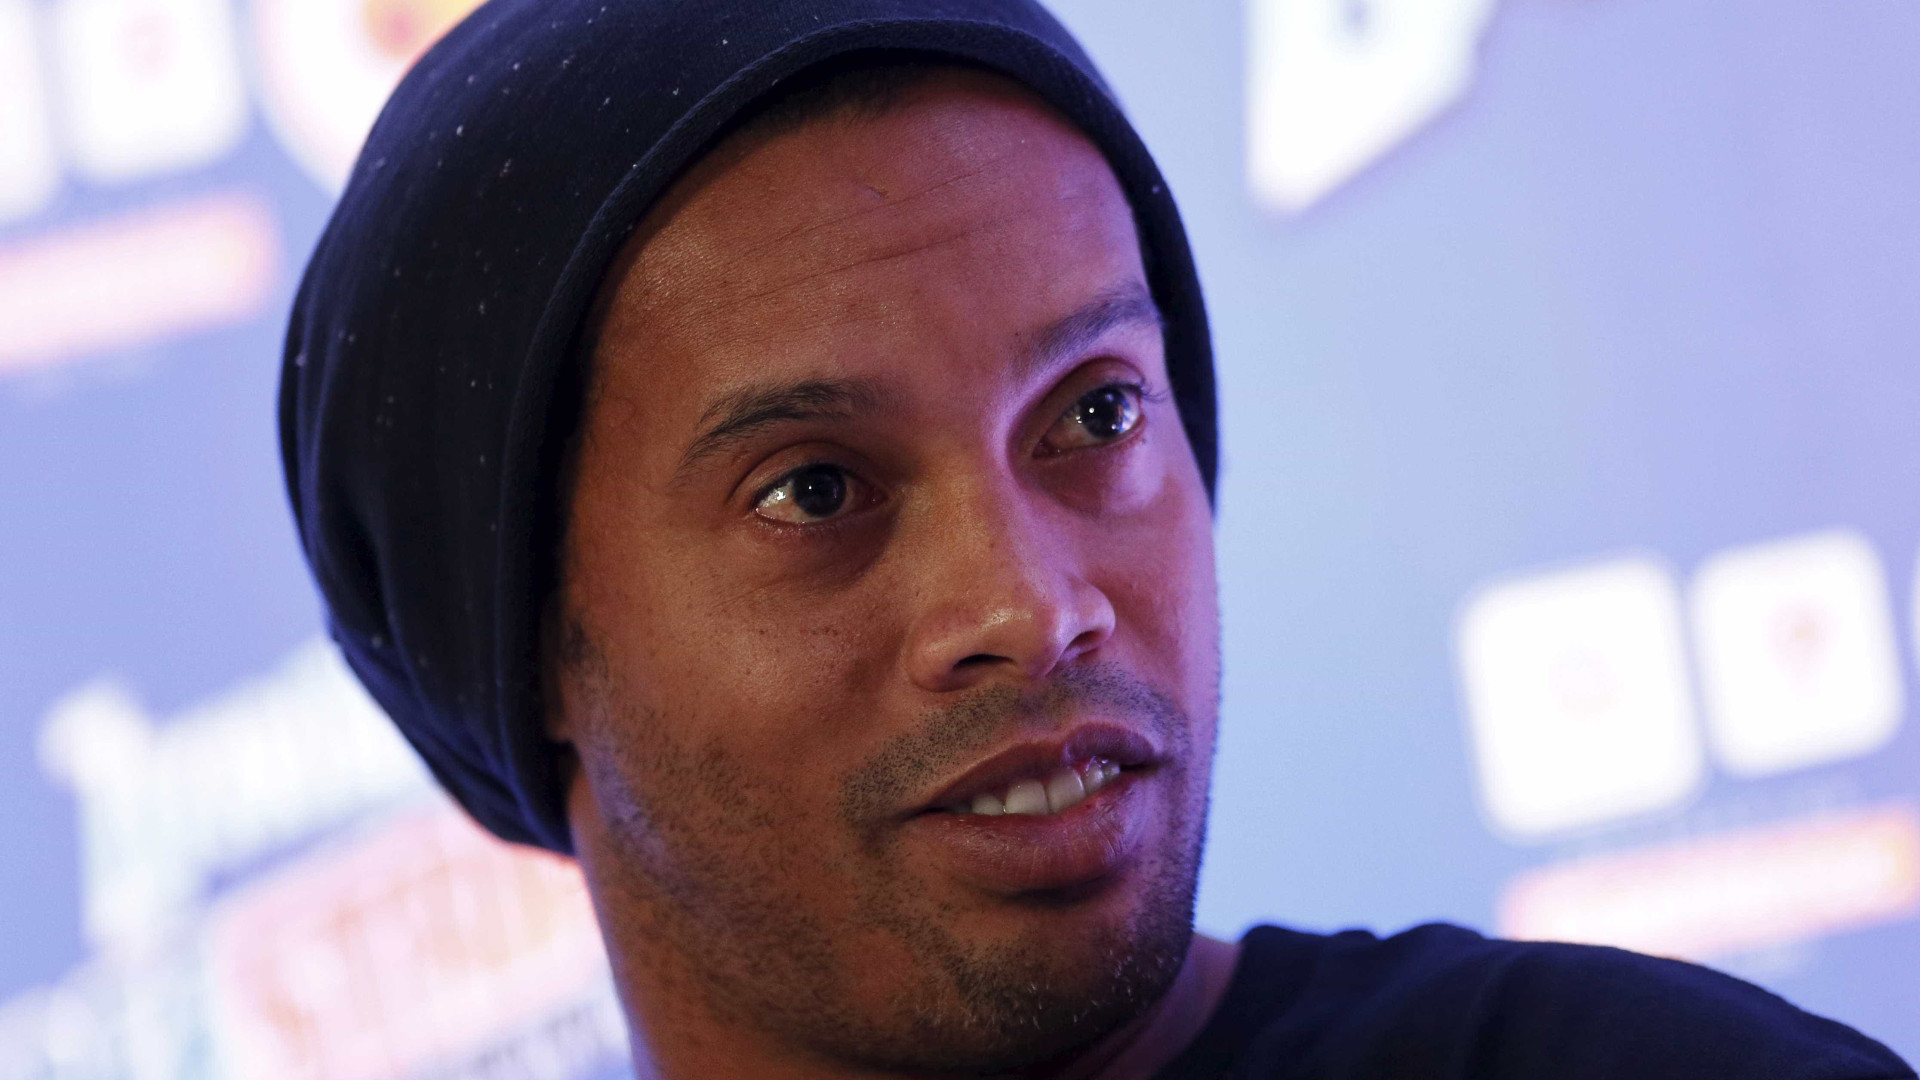 Com passaporte retido, Ronaldinho se ausenta de evento em Dubai